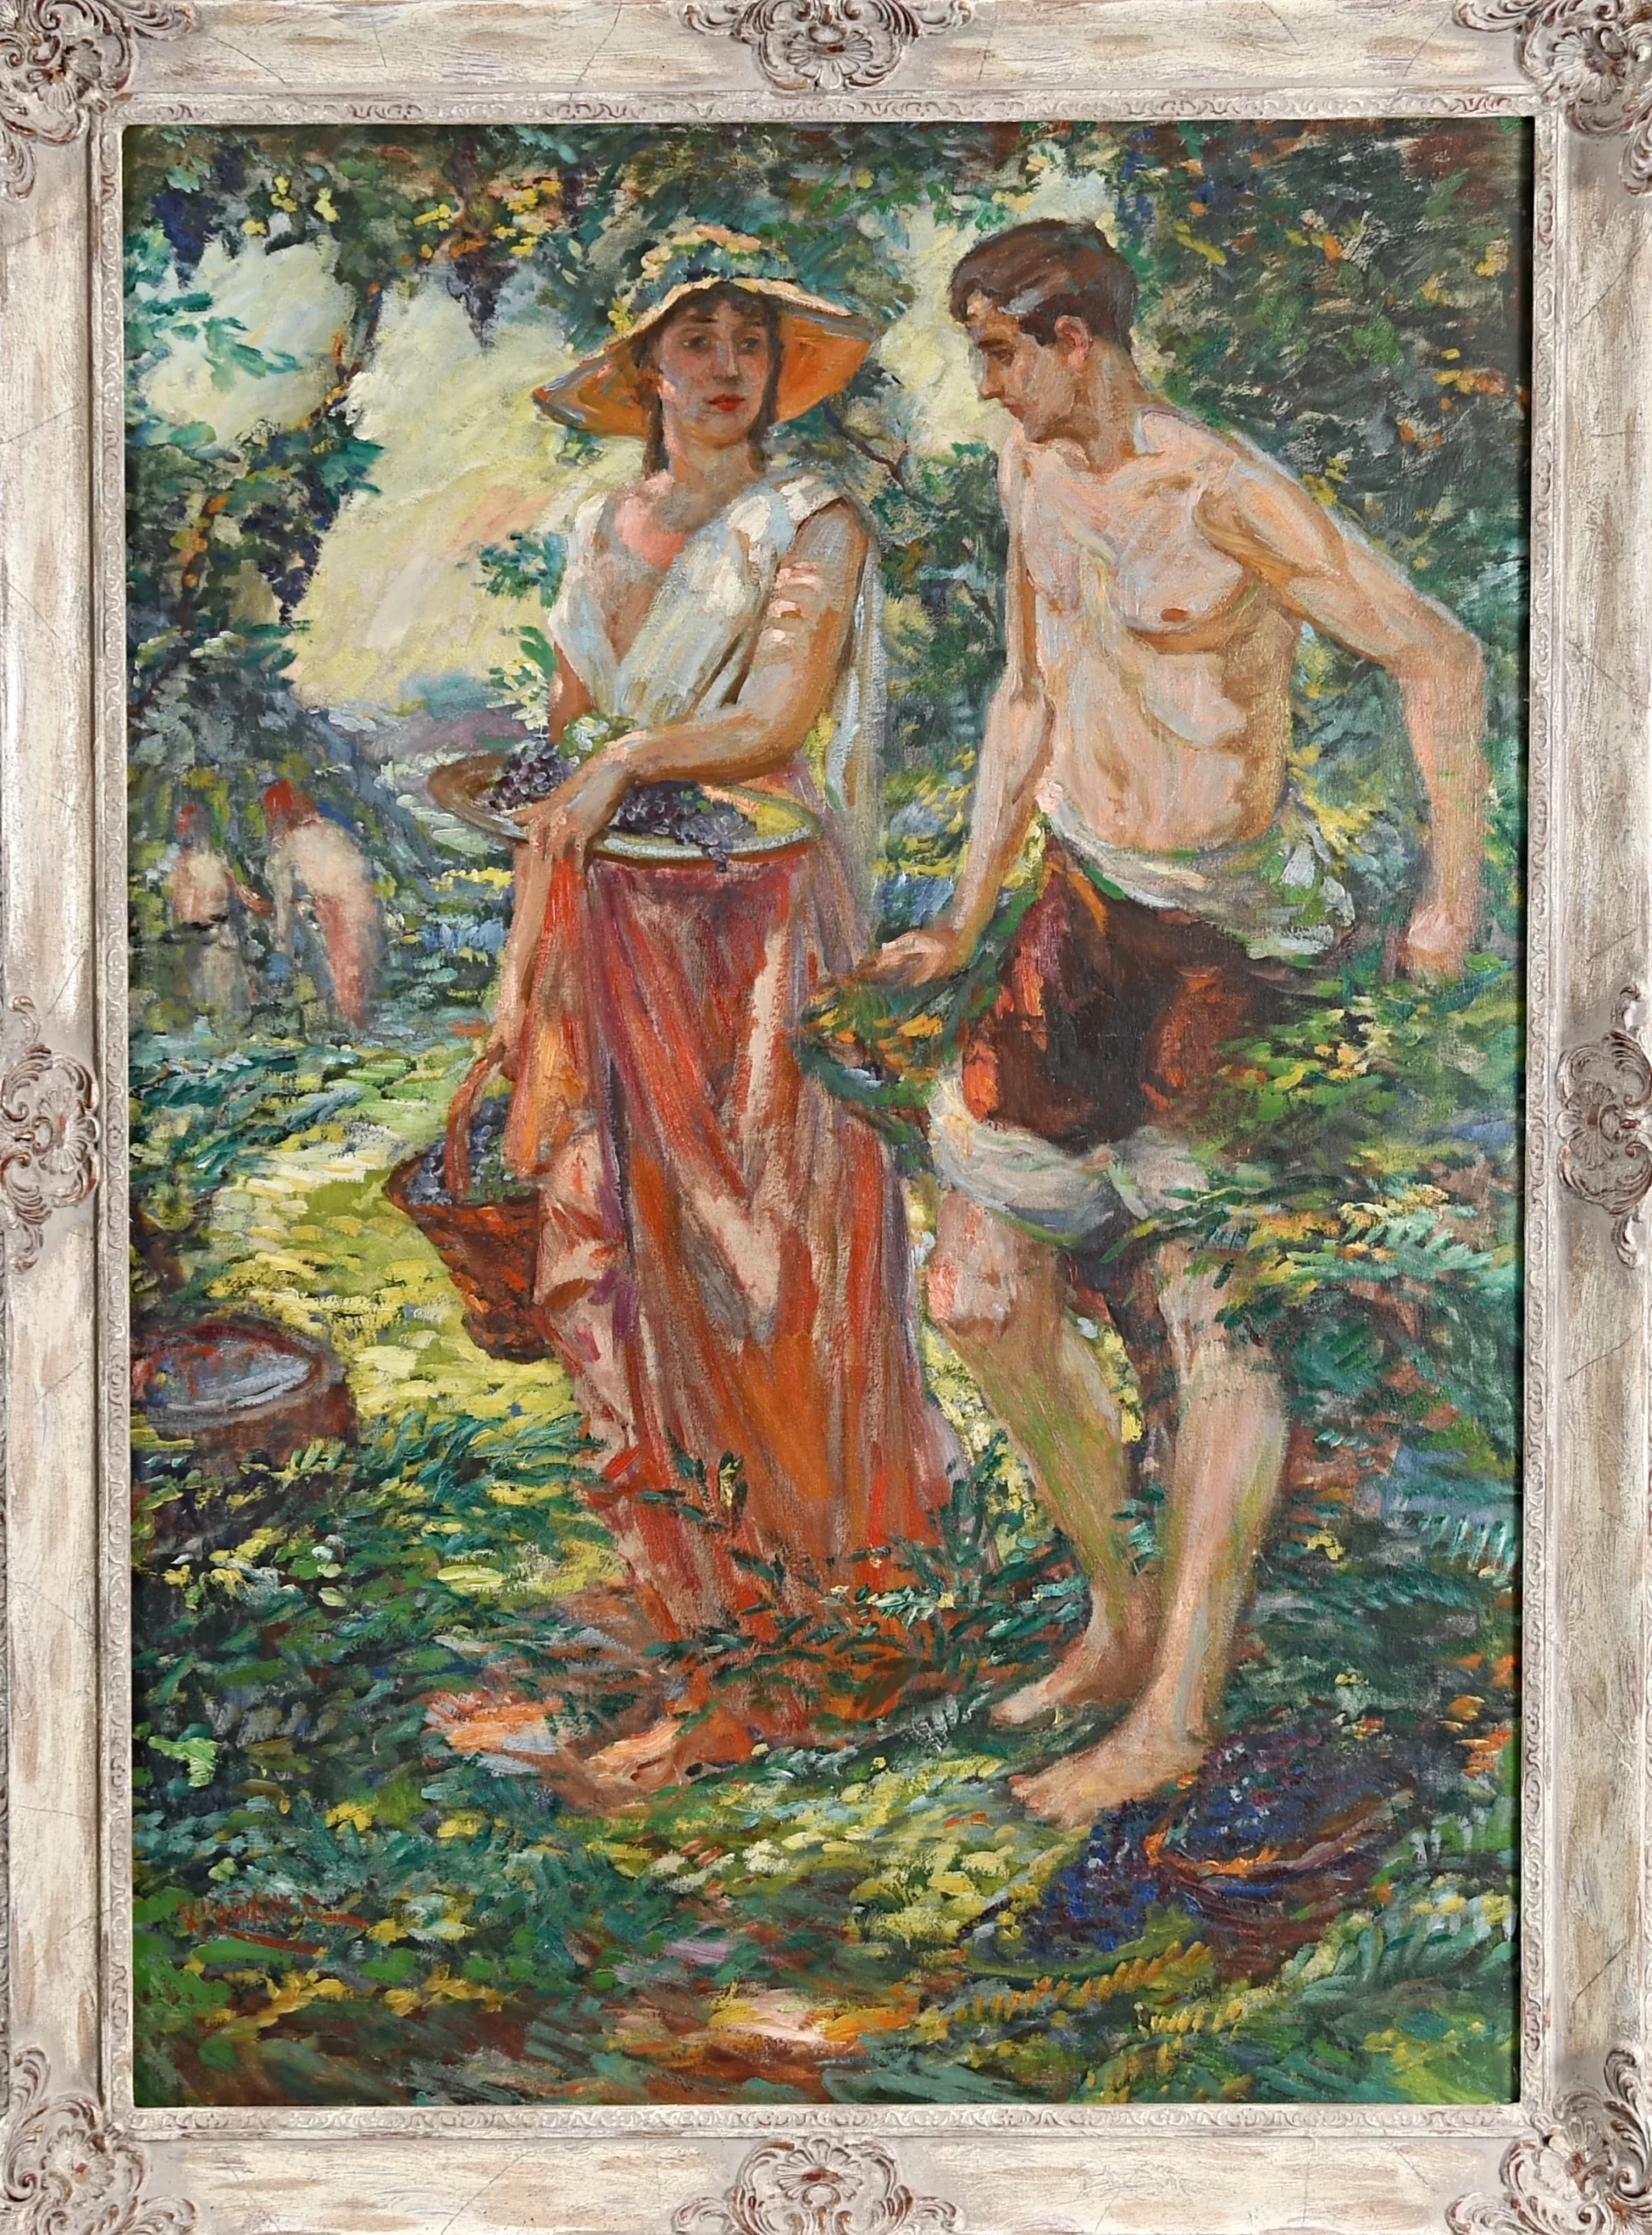 Přední strana obrazu, Košvanec Vlastimil (1887-1961), Sběr hroznů